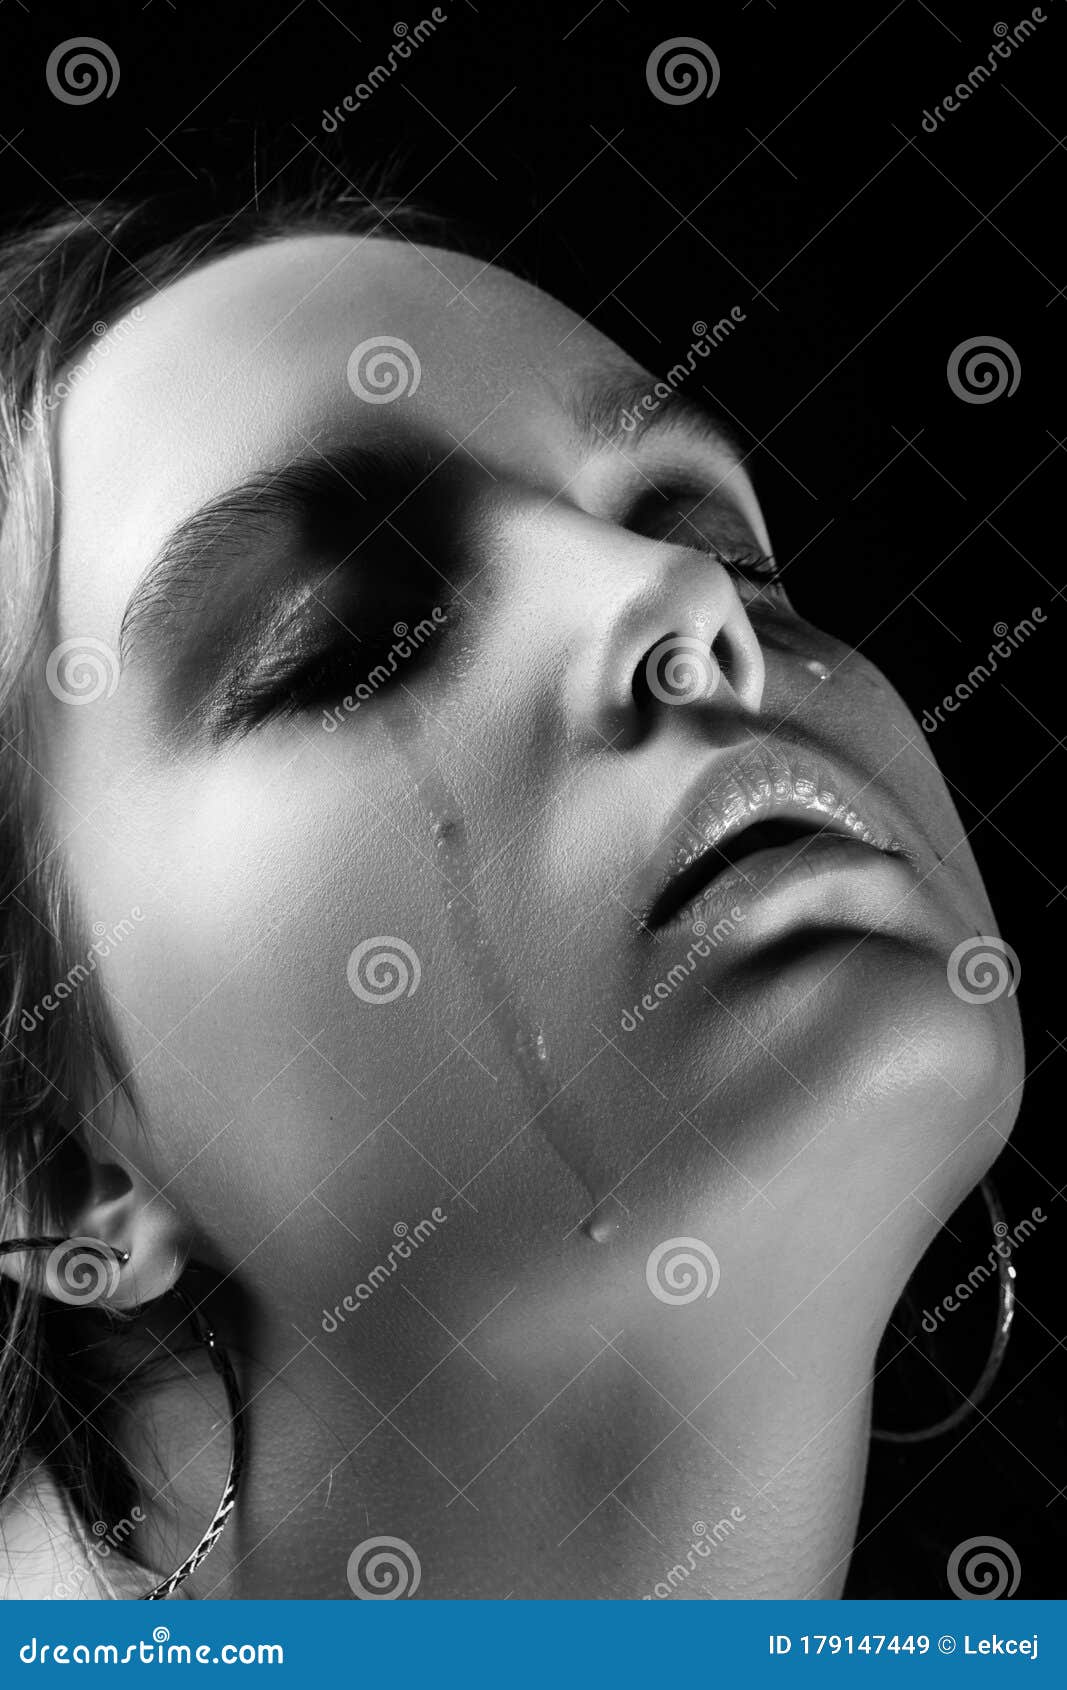 Sad crying girl stock image. Image of closeup, face - 179147449